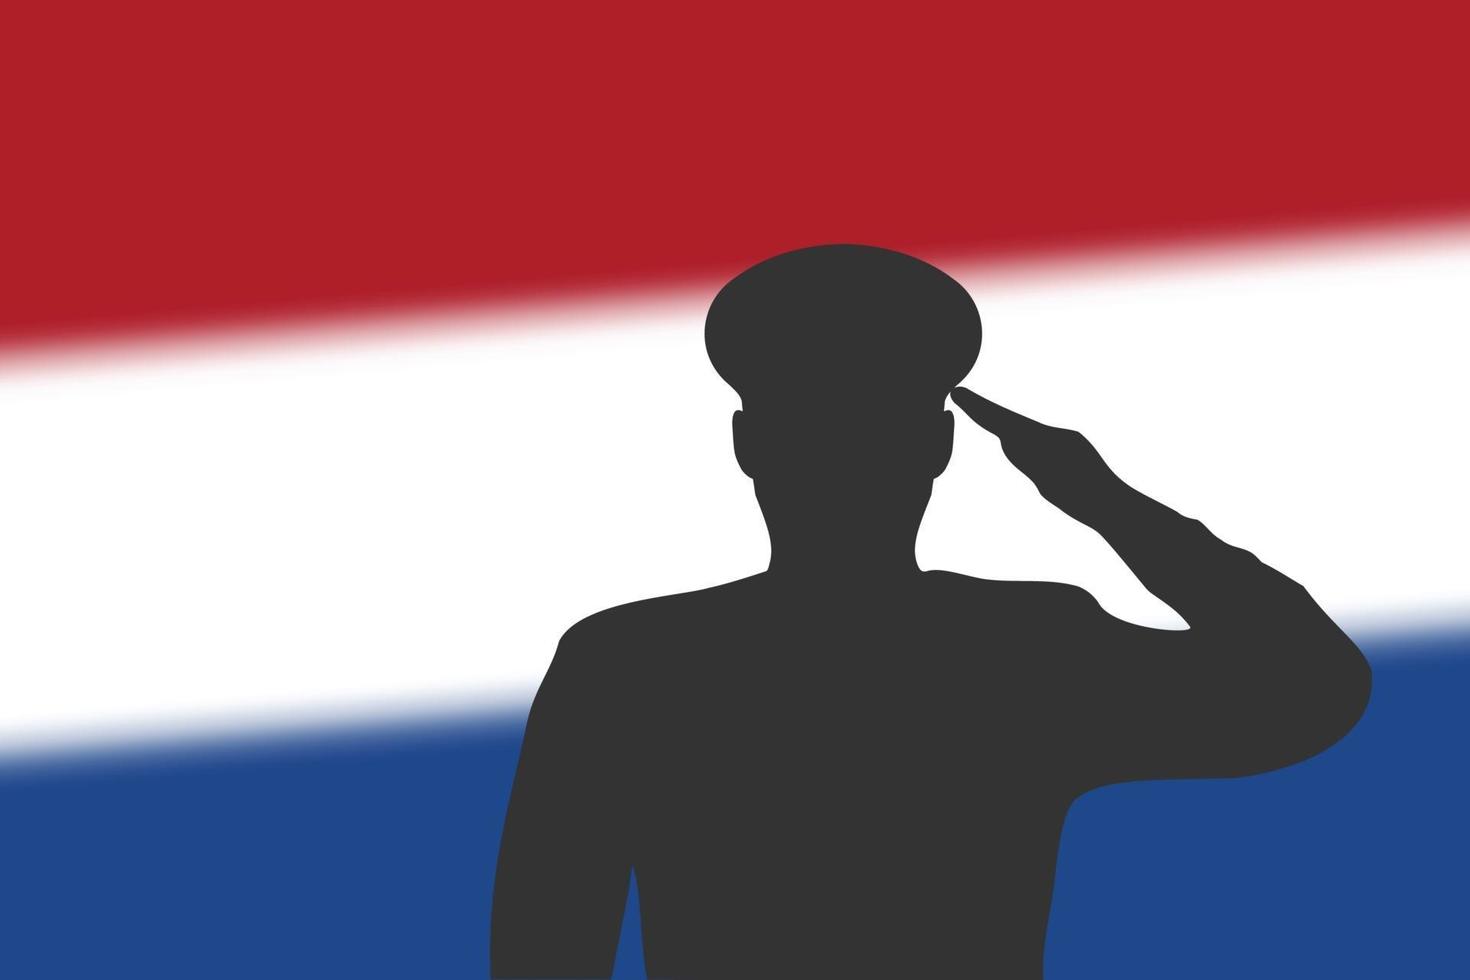 Lötsilhouette auf unscharfem Hintergrund mit niederländischer Flagge. vektor